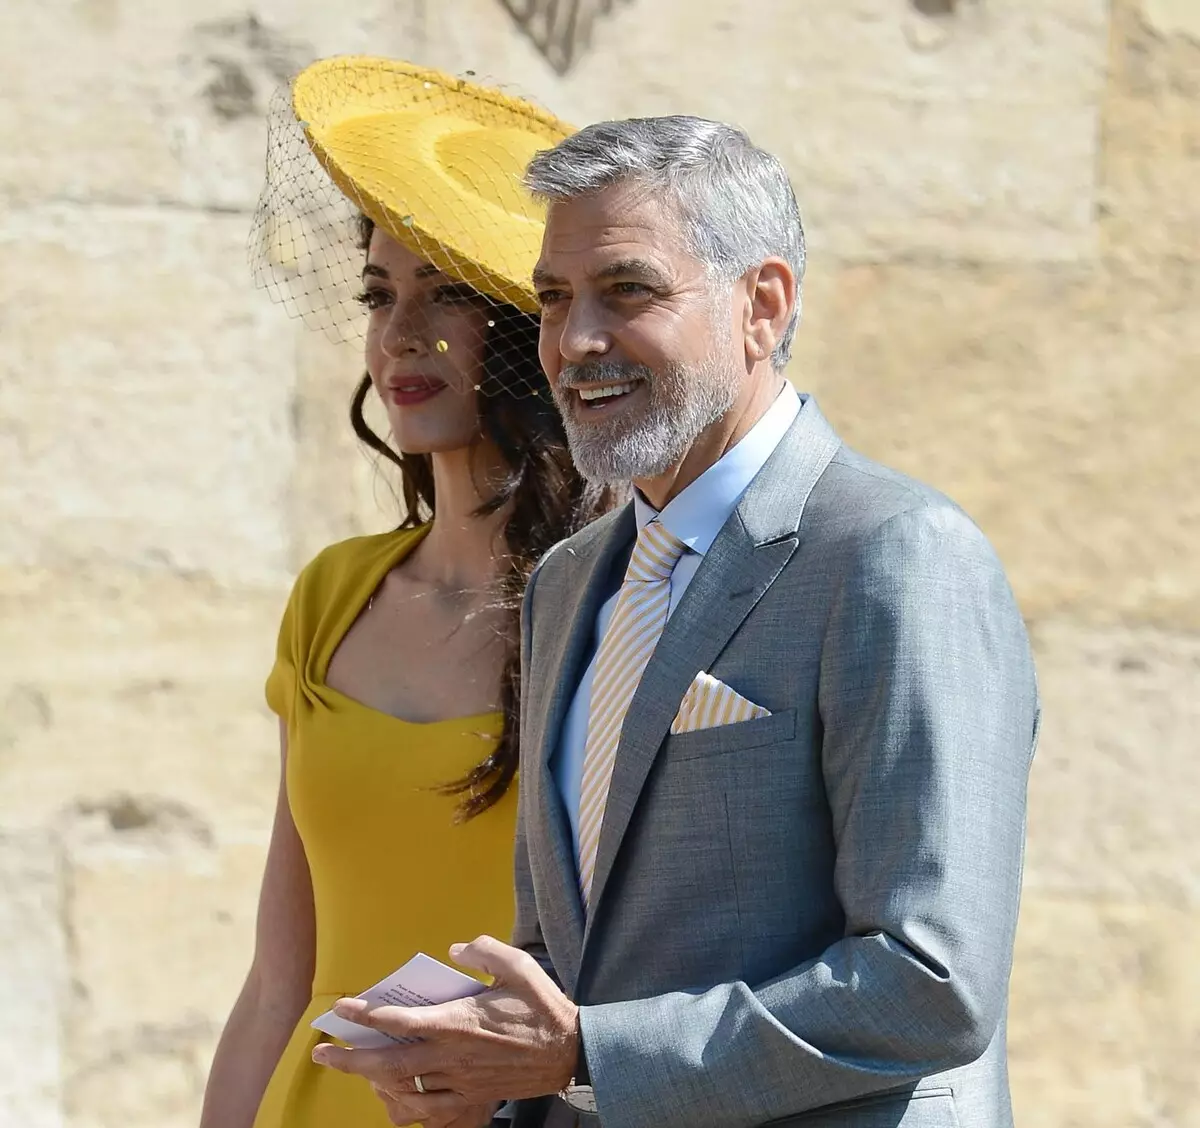 George Clooney alishutumu vyombo vya habari katika mimea ya megan ya mimea 130540_1